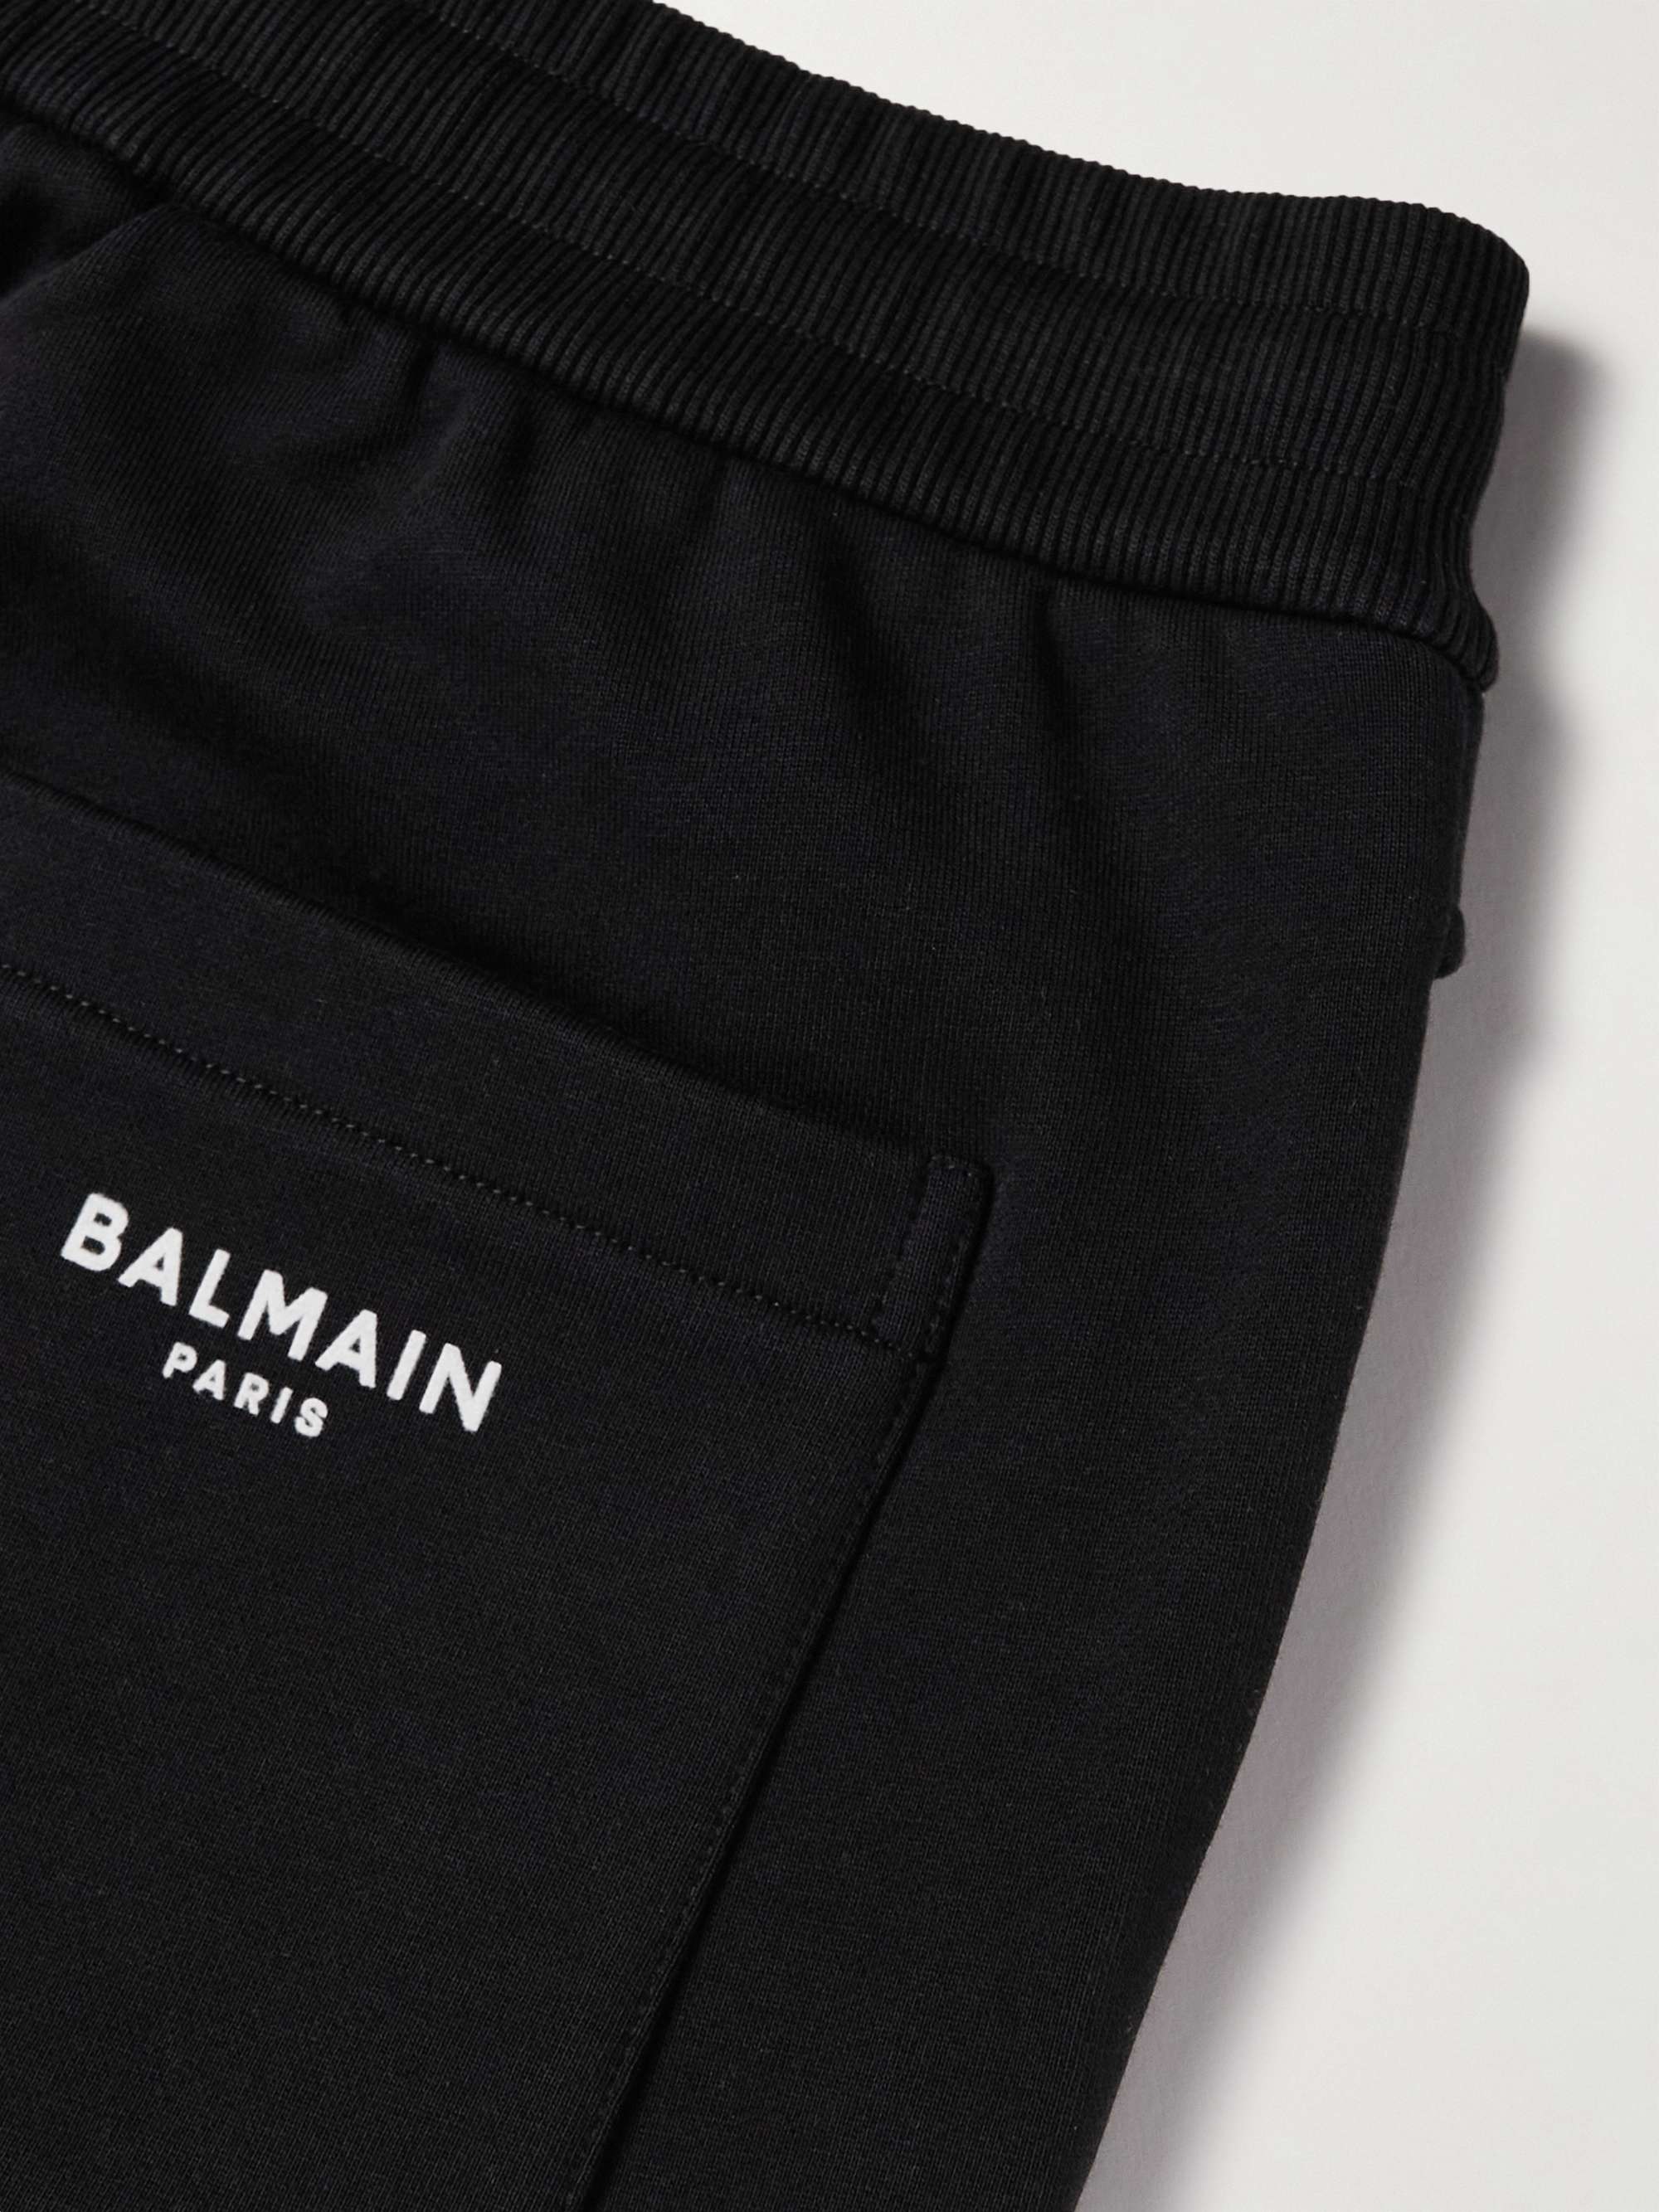 BALMAIN Slim-Fit Logo-Flocked Cotton-Jersey Drawstring Shorts